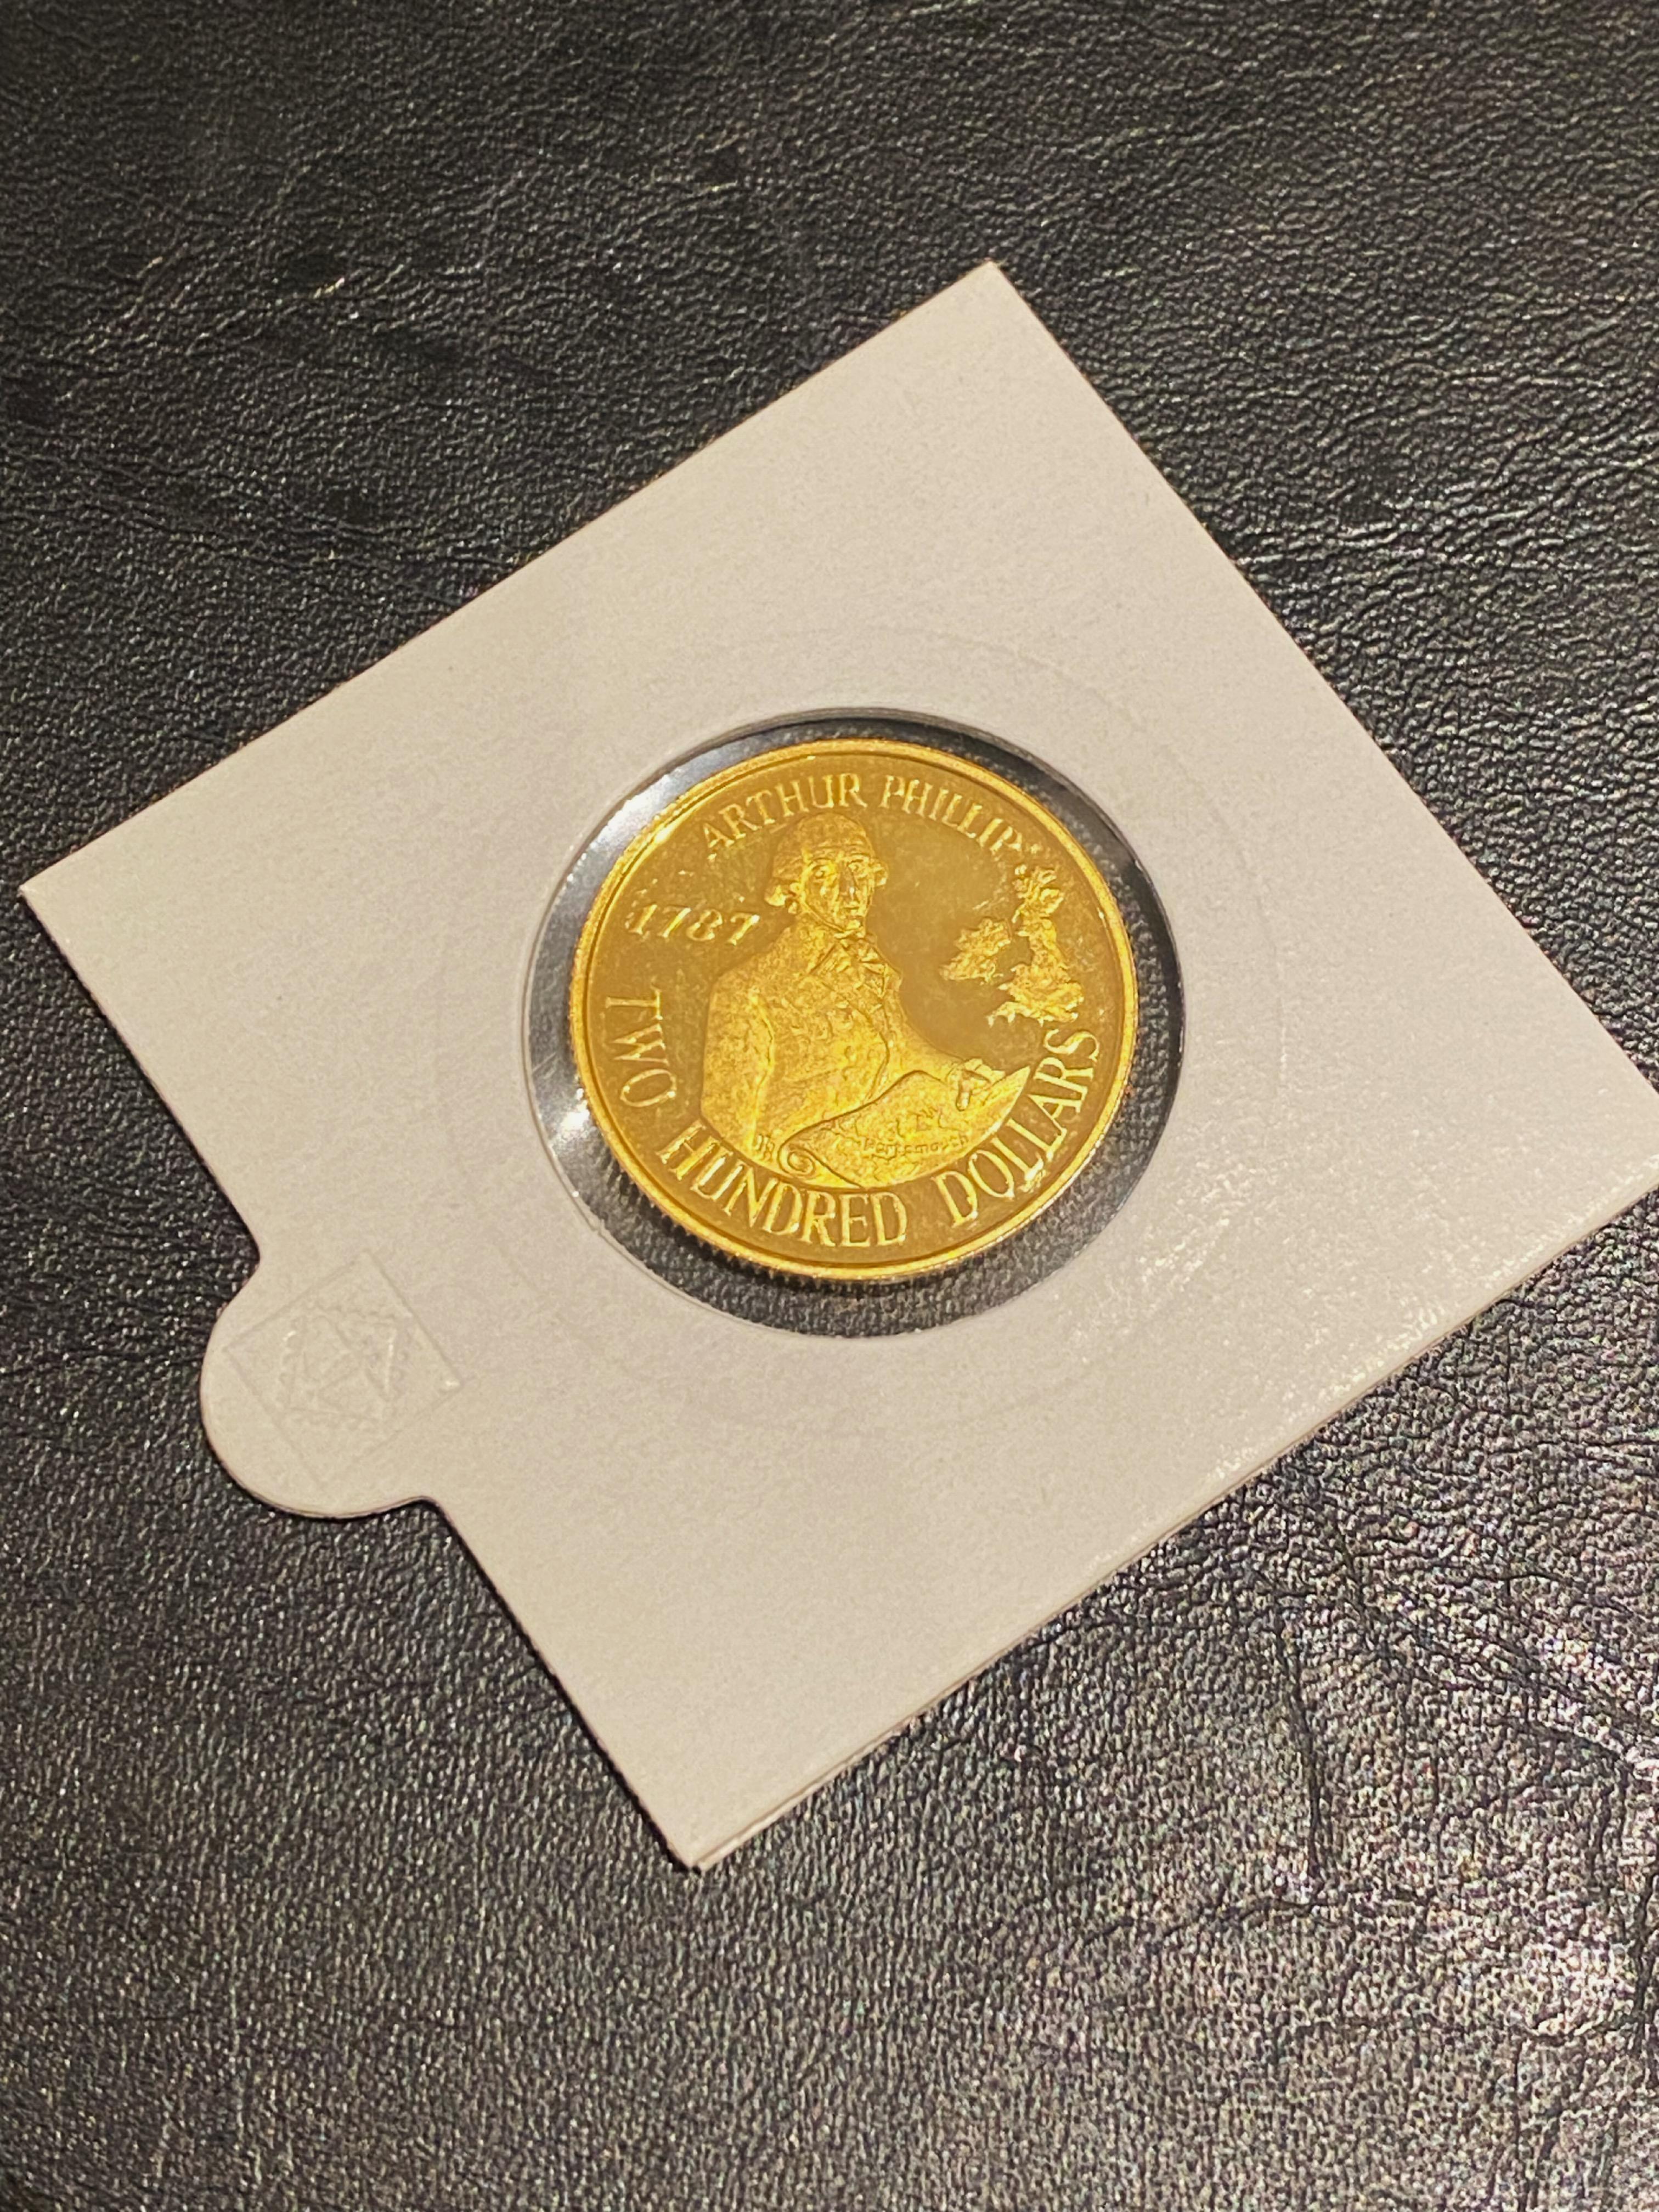 c1987 22K Gold Australische Einschiffung Arthur Phillips $200 Ungeprägte Münze

 

Die Vorderseite zeigt das traditionelle Porträt Ihrer Majestät Königin Elizabeth II. 

Auf der Rückseite ist Kapitän Arthur Phillips abgebildet, der 1787 in der